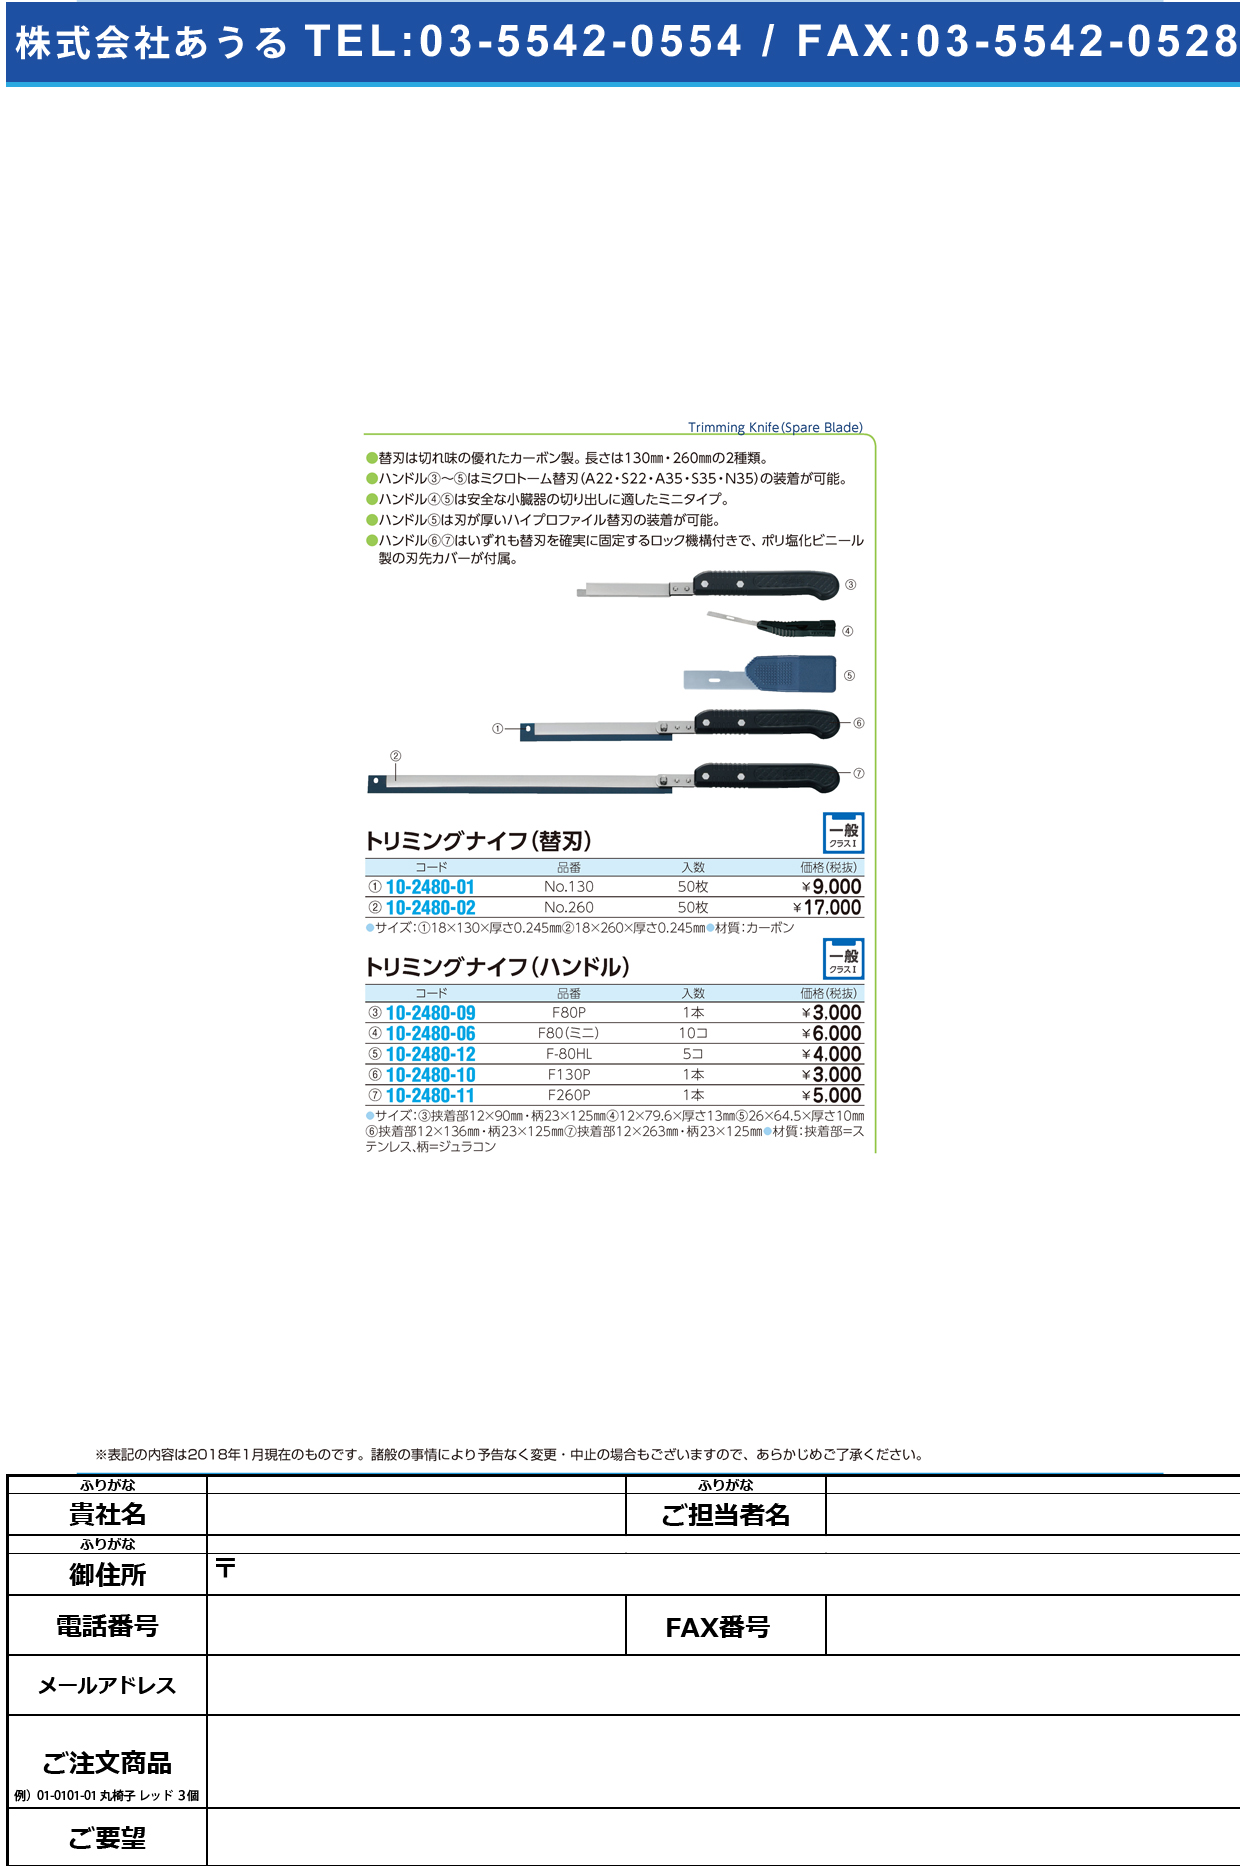 (10-2480-10)トリミングナイフハンドル（フェザー） F-130P ﾄﾘﾐﾝｸﾞﾅｲﾌﾊﾝﾄﾞﾙ(ﾌｪｻﾞｰ【1本単位】【2019年カタログ商品】